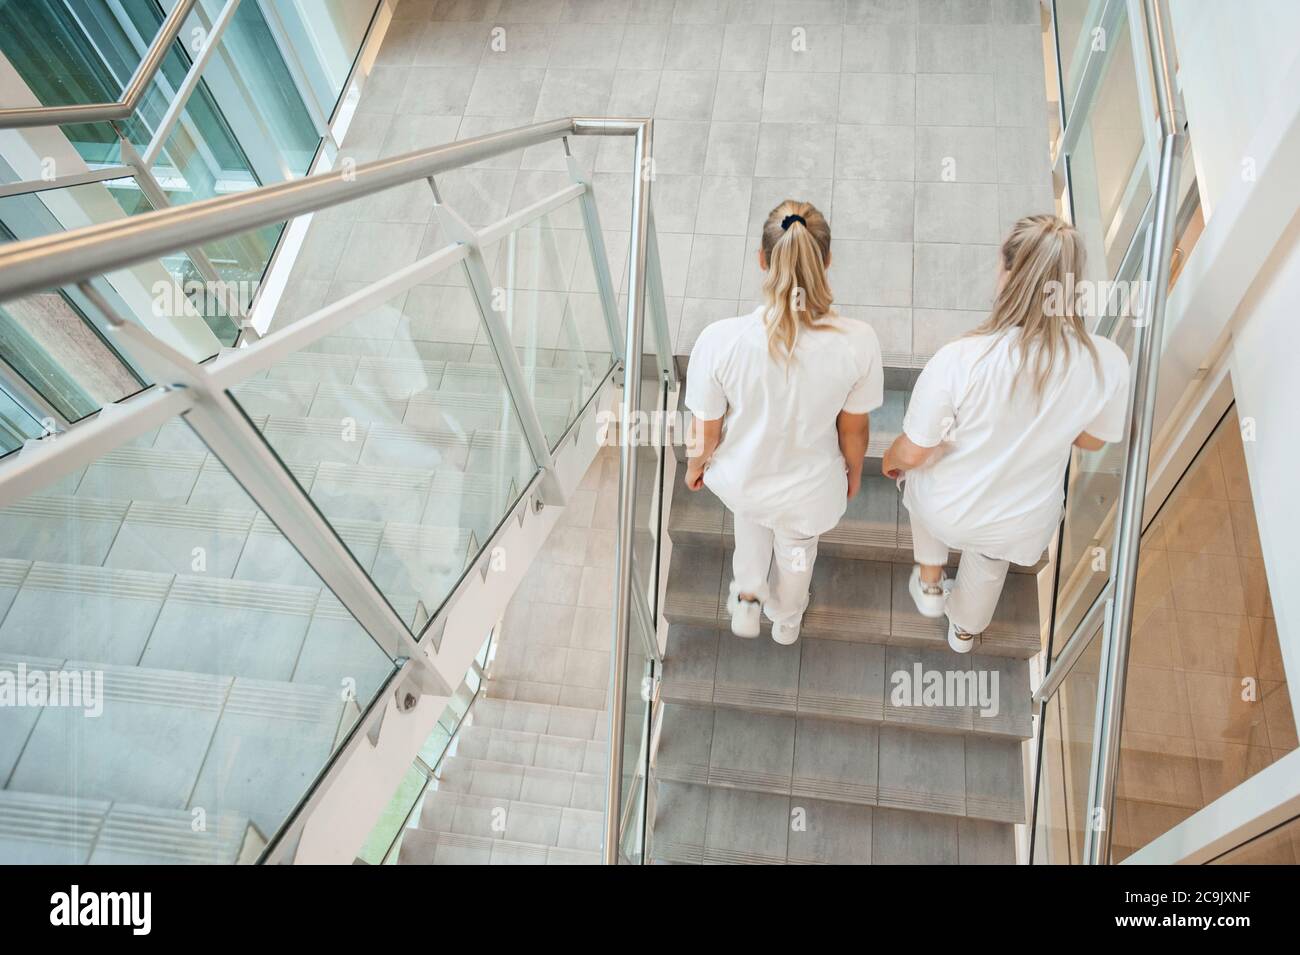 Infirmières marchant dans l'escalier d'un hôpital. Banque D'Images